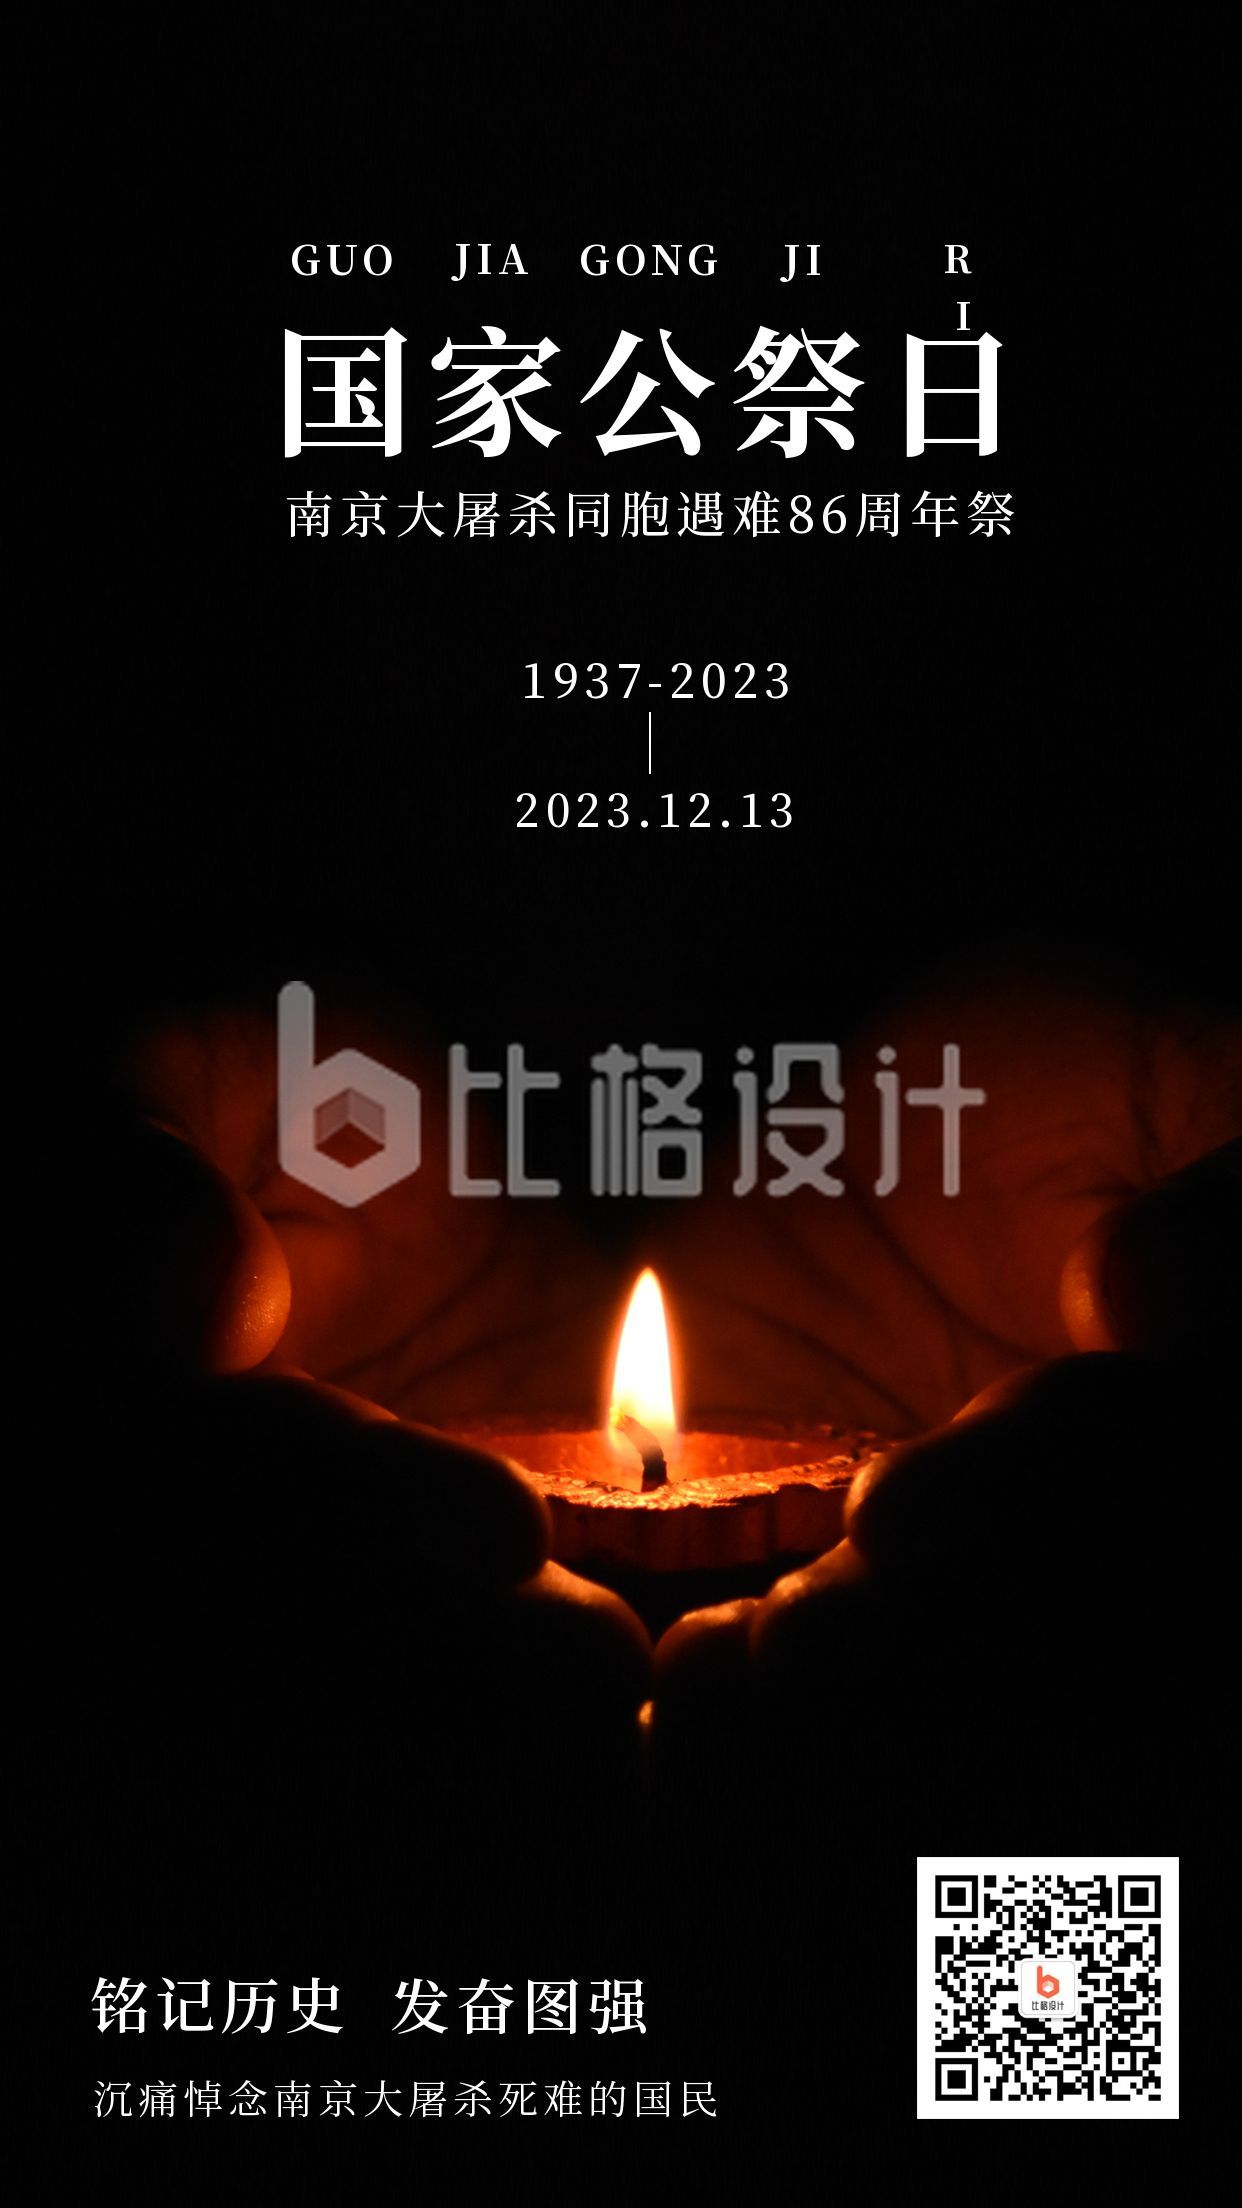 12.13国家公祭日南京大屠杀纪念日手机海报